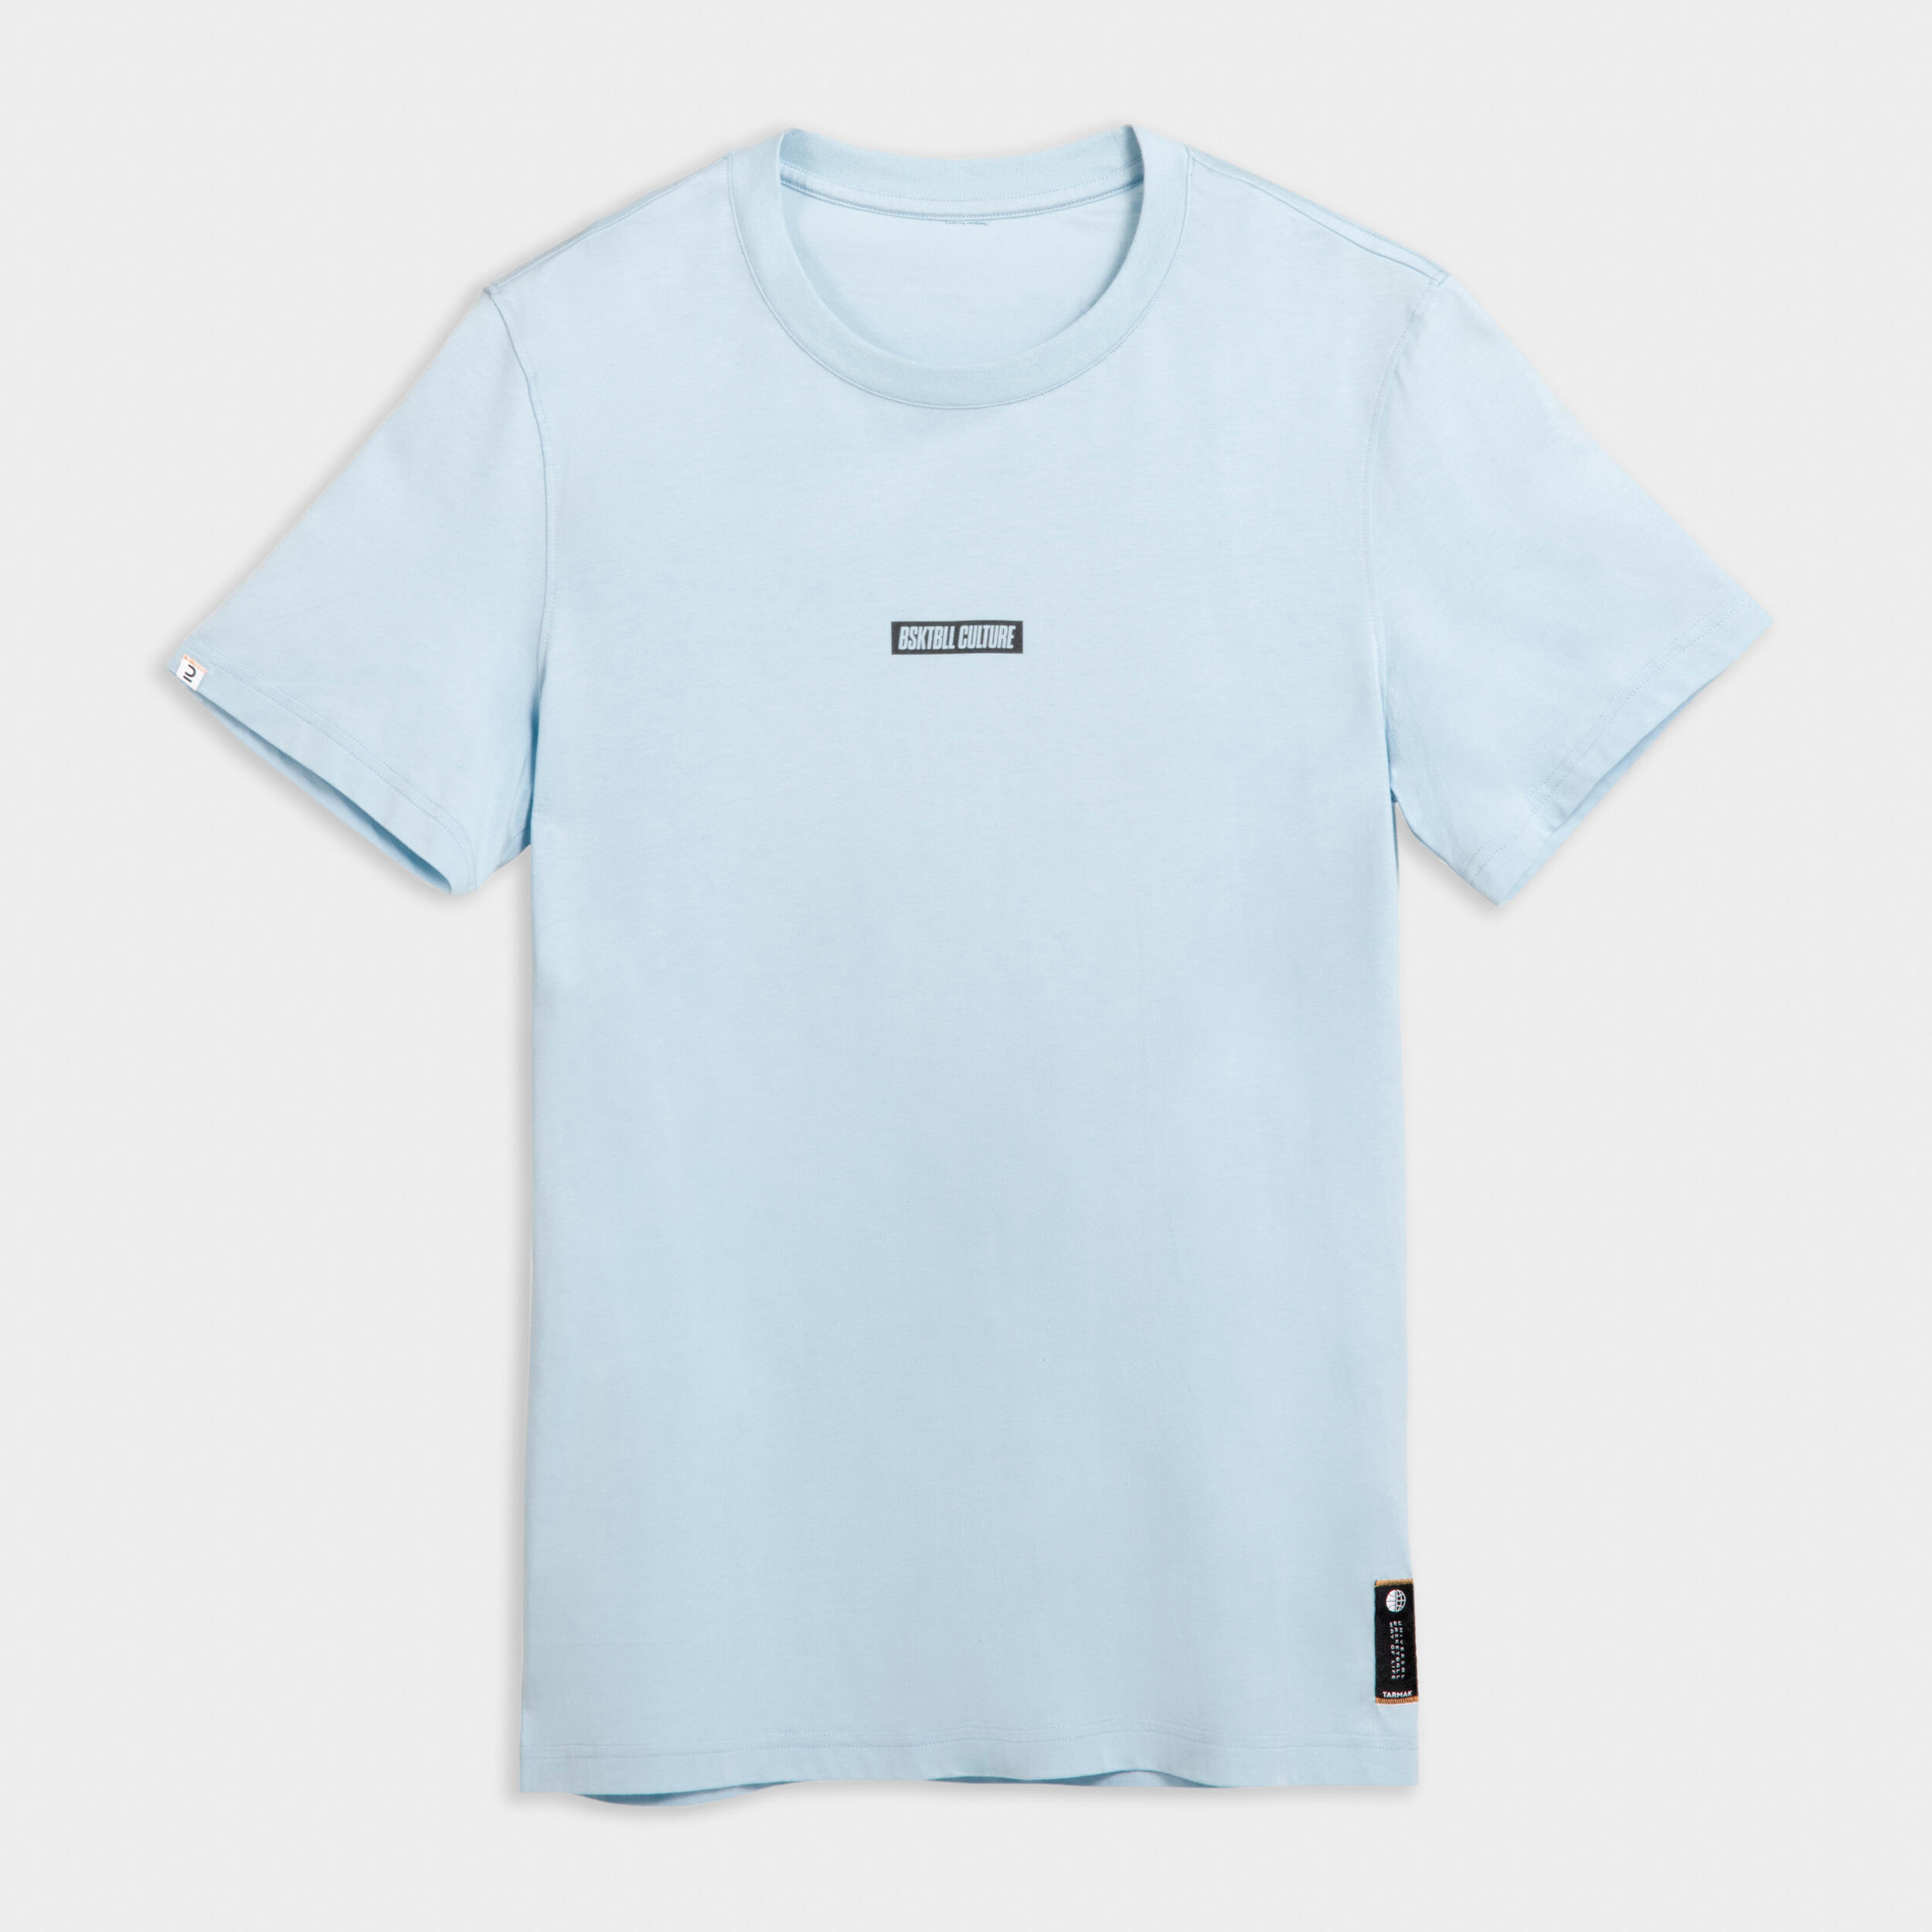 Men's/Women's Basketball T-Shirt/Jersey TS500 Signature - Blue 8/9